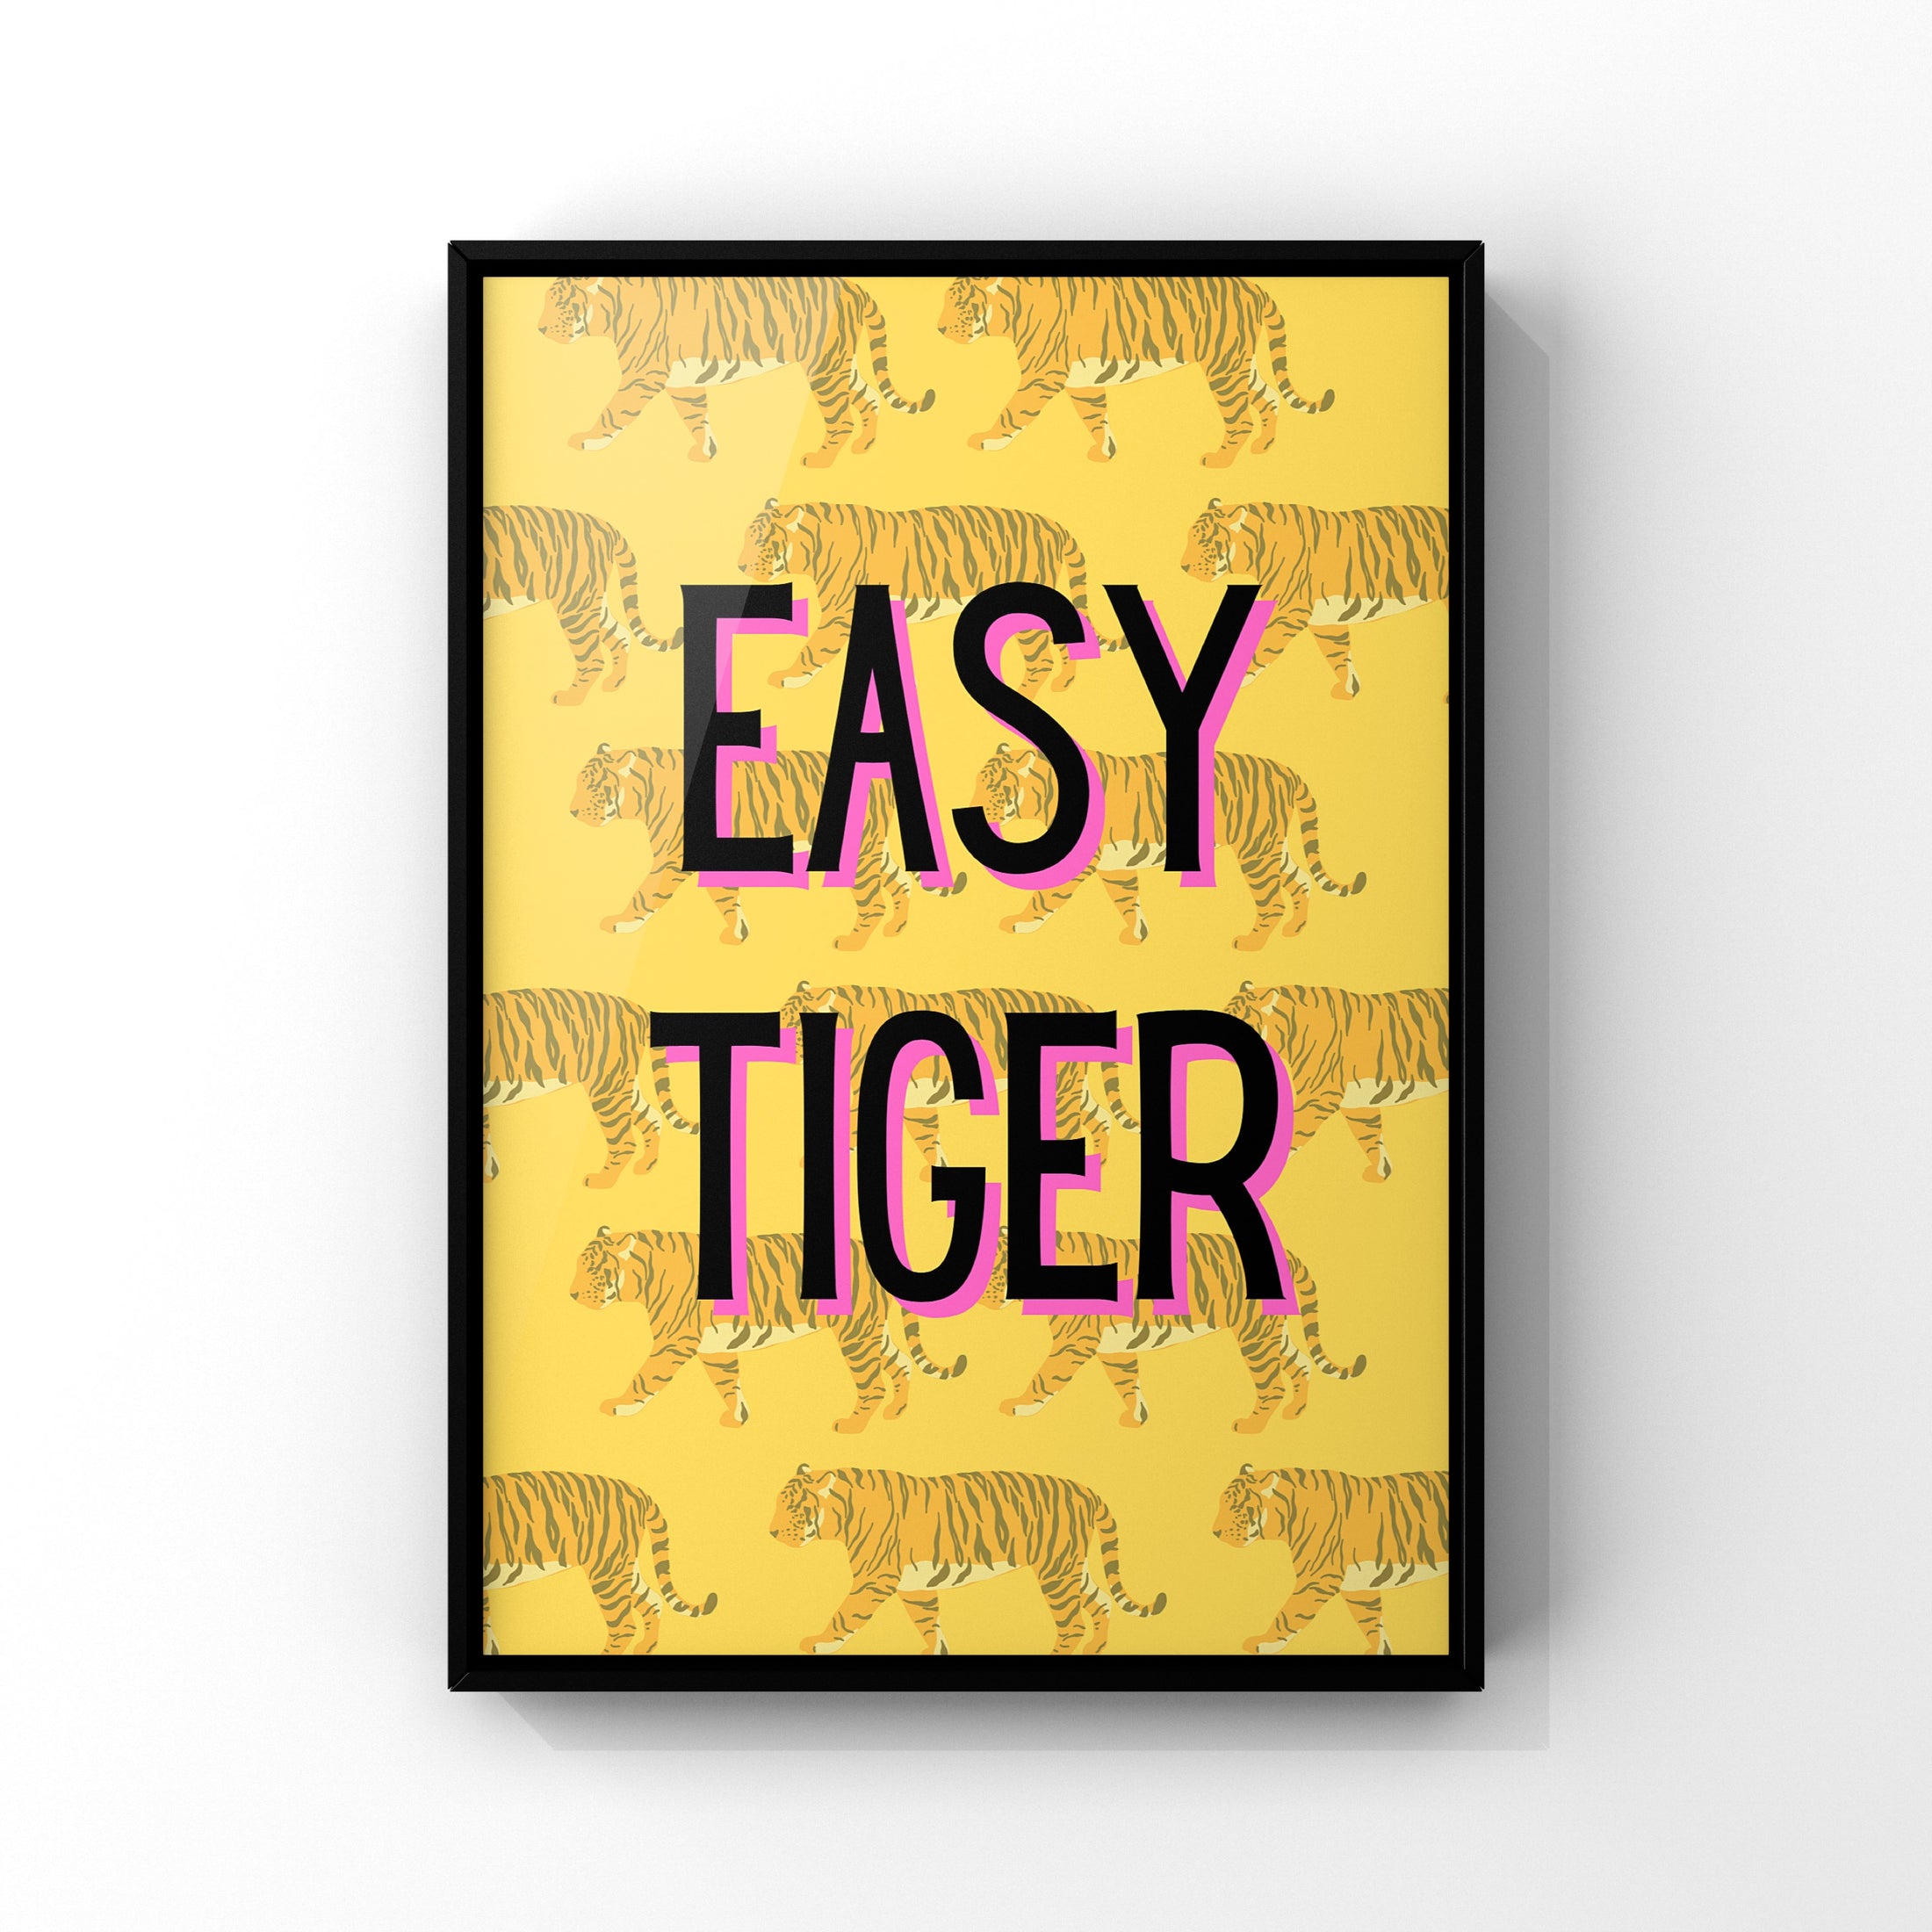 Easy tiger